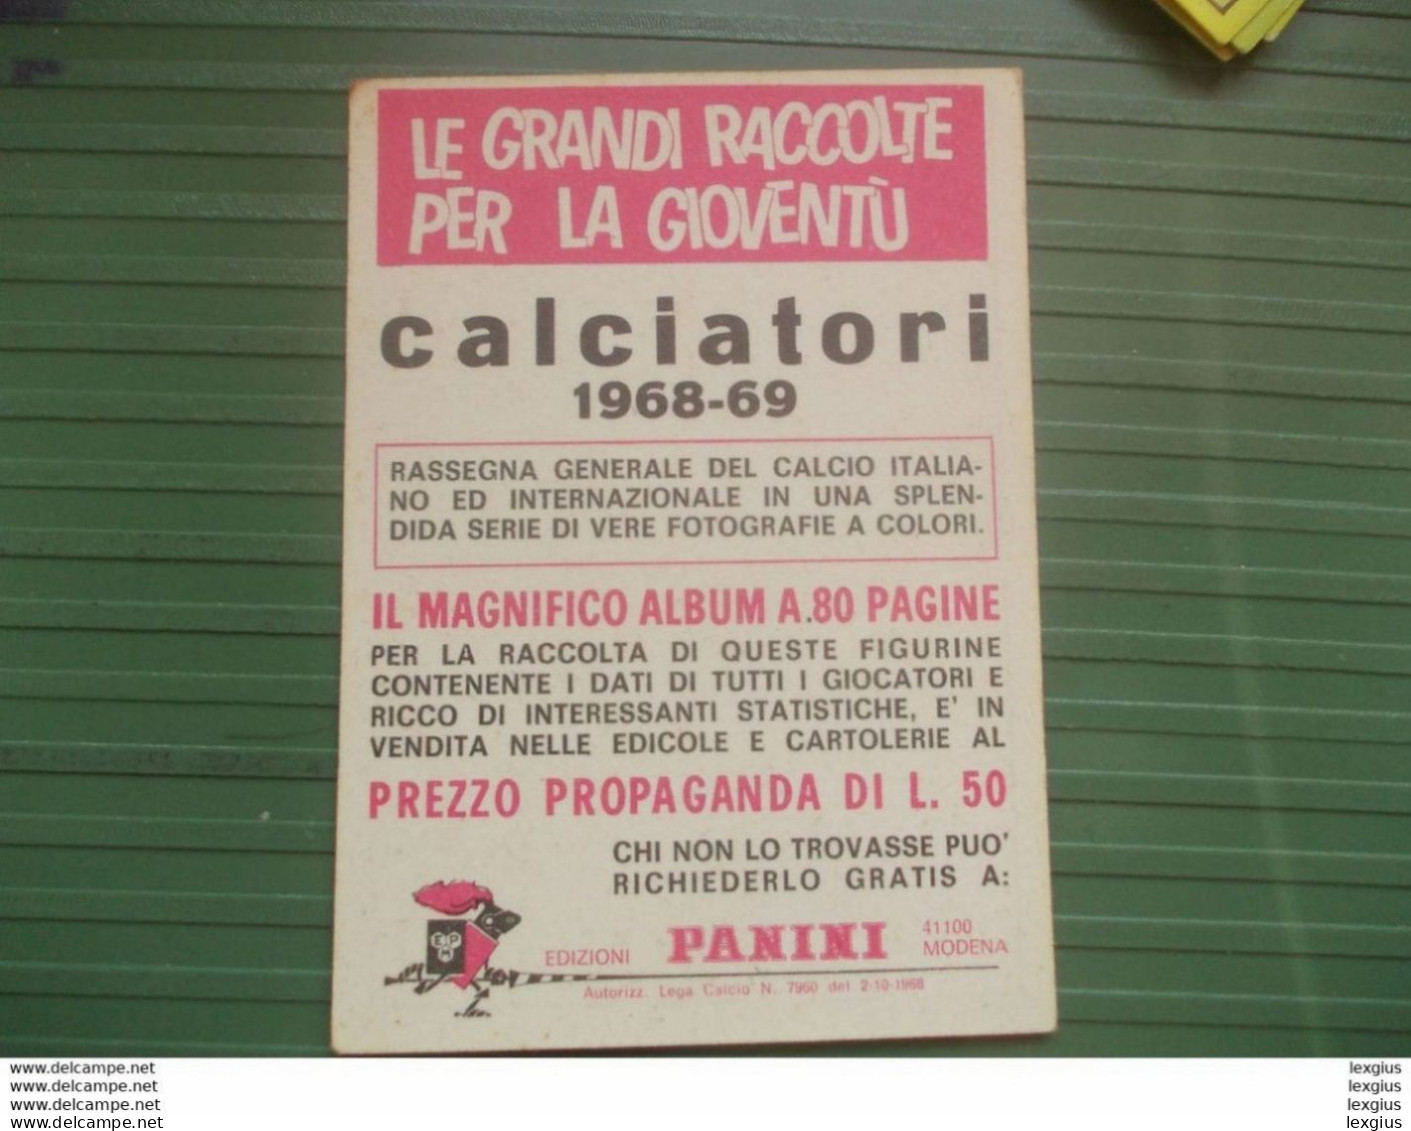 RIVERA STORIA DELLE COPPE ALBUM FIGURINE CALCIATORI PANINI 1968 69 ORIGINAL UNUSED STICKER (sd) - Edition Italienne